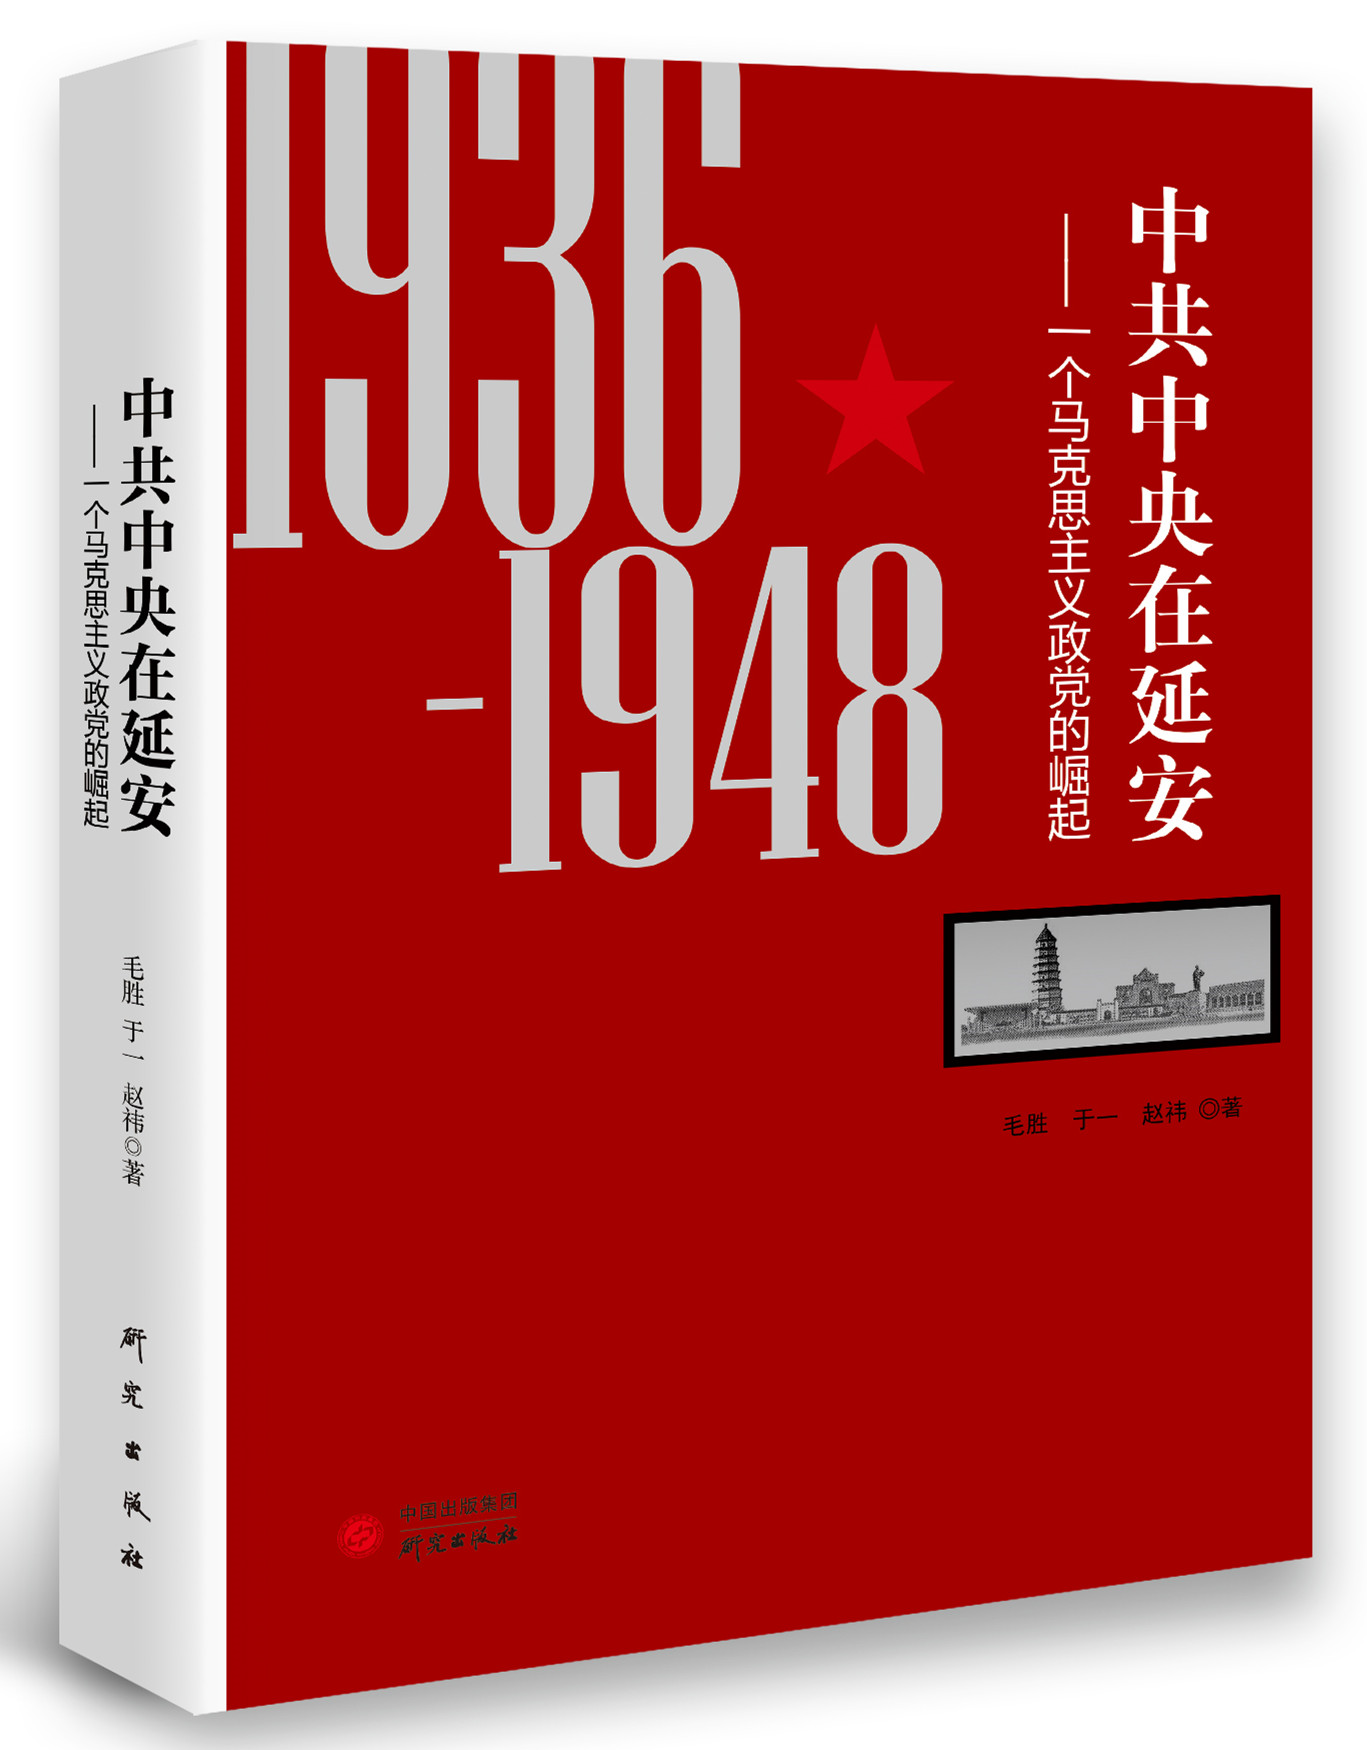 重温百年历程 | 研究出版社党史教育书系10大好书推荐